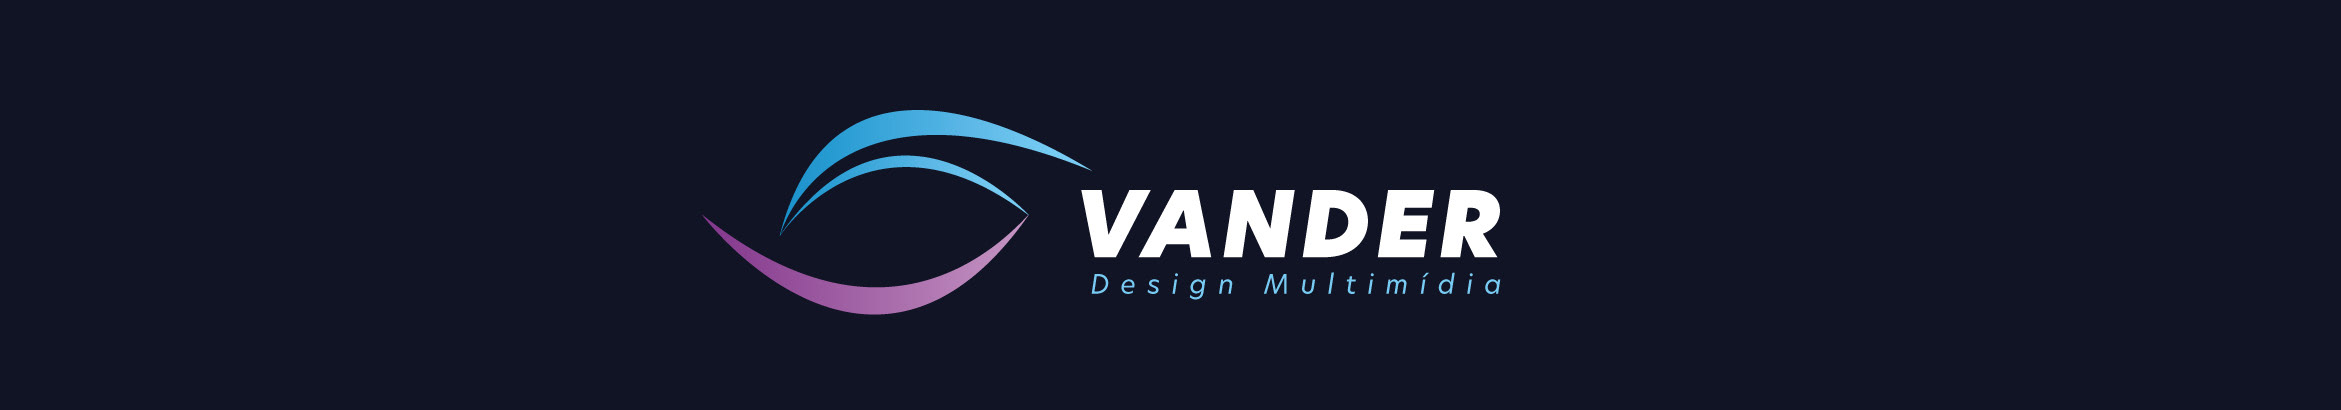 VANDER DE ANDRADE's profile banner